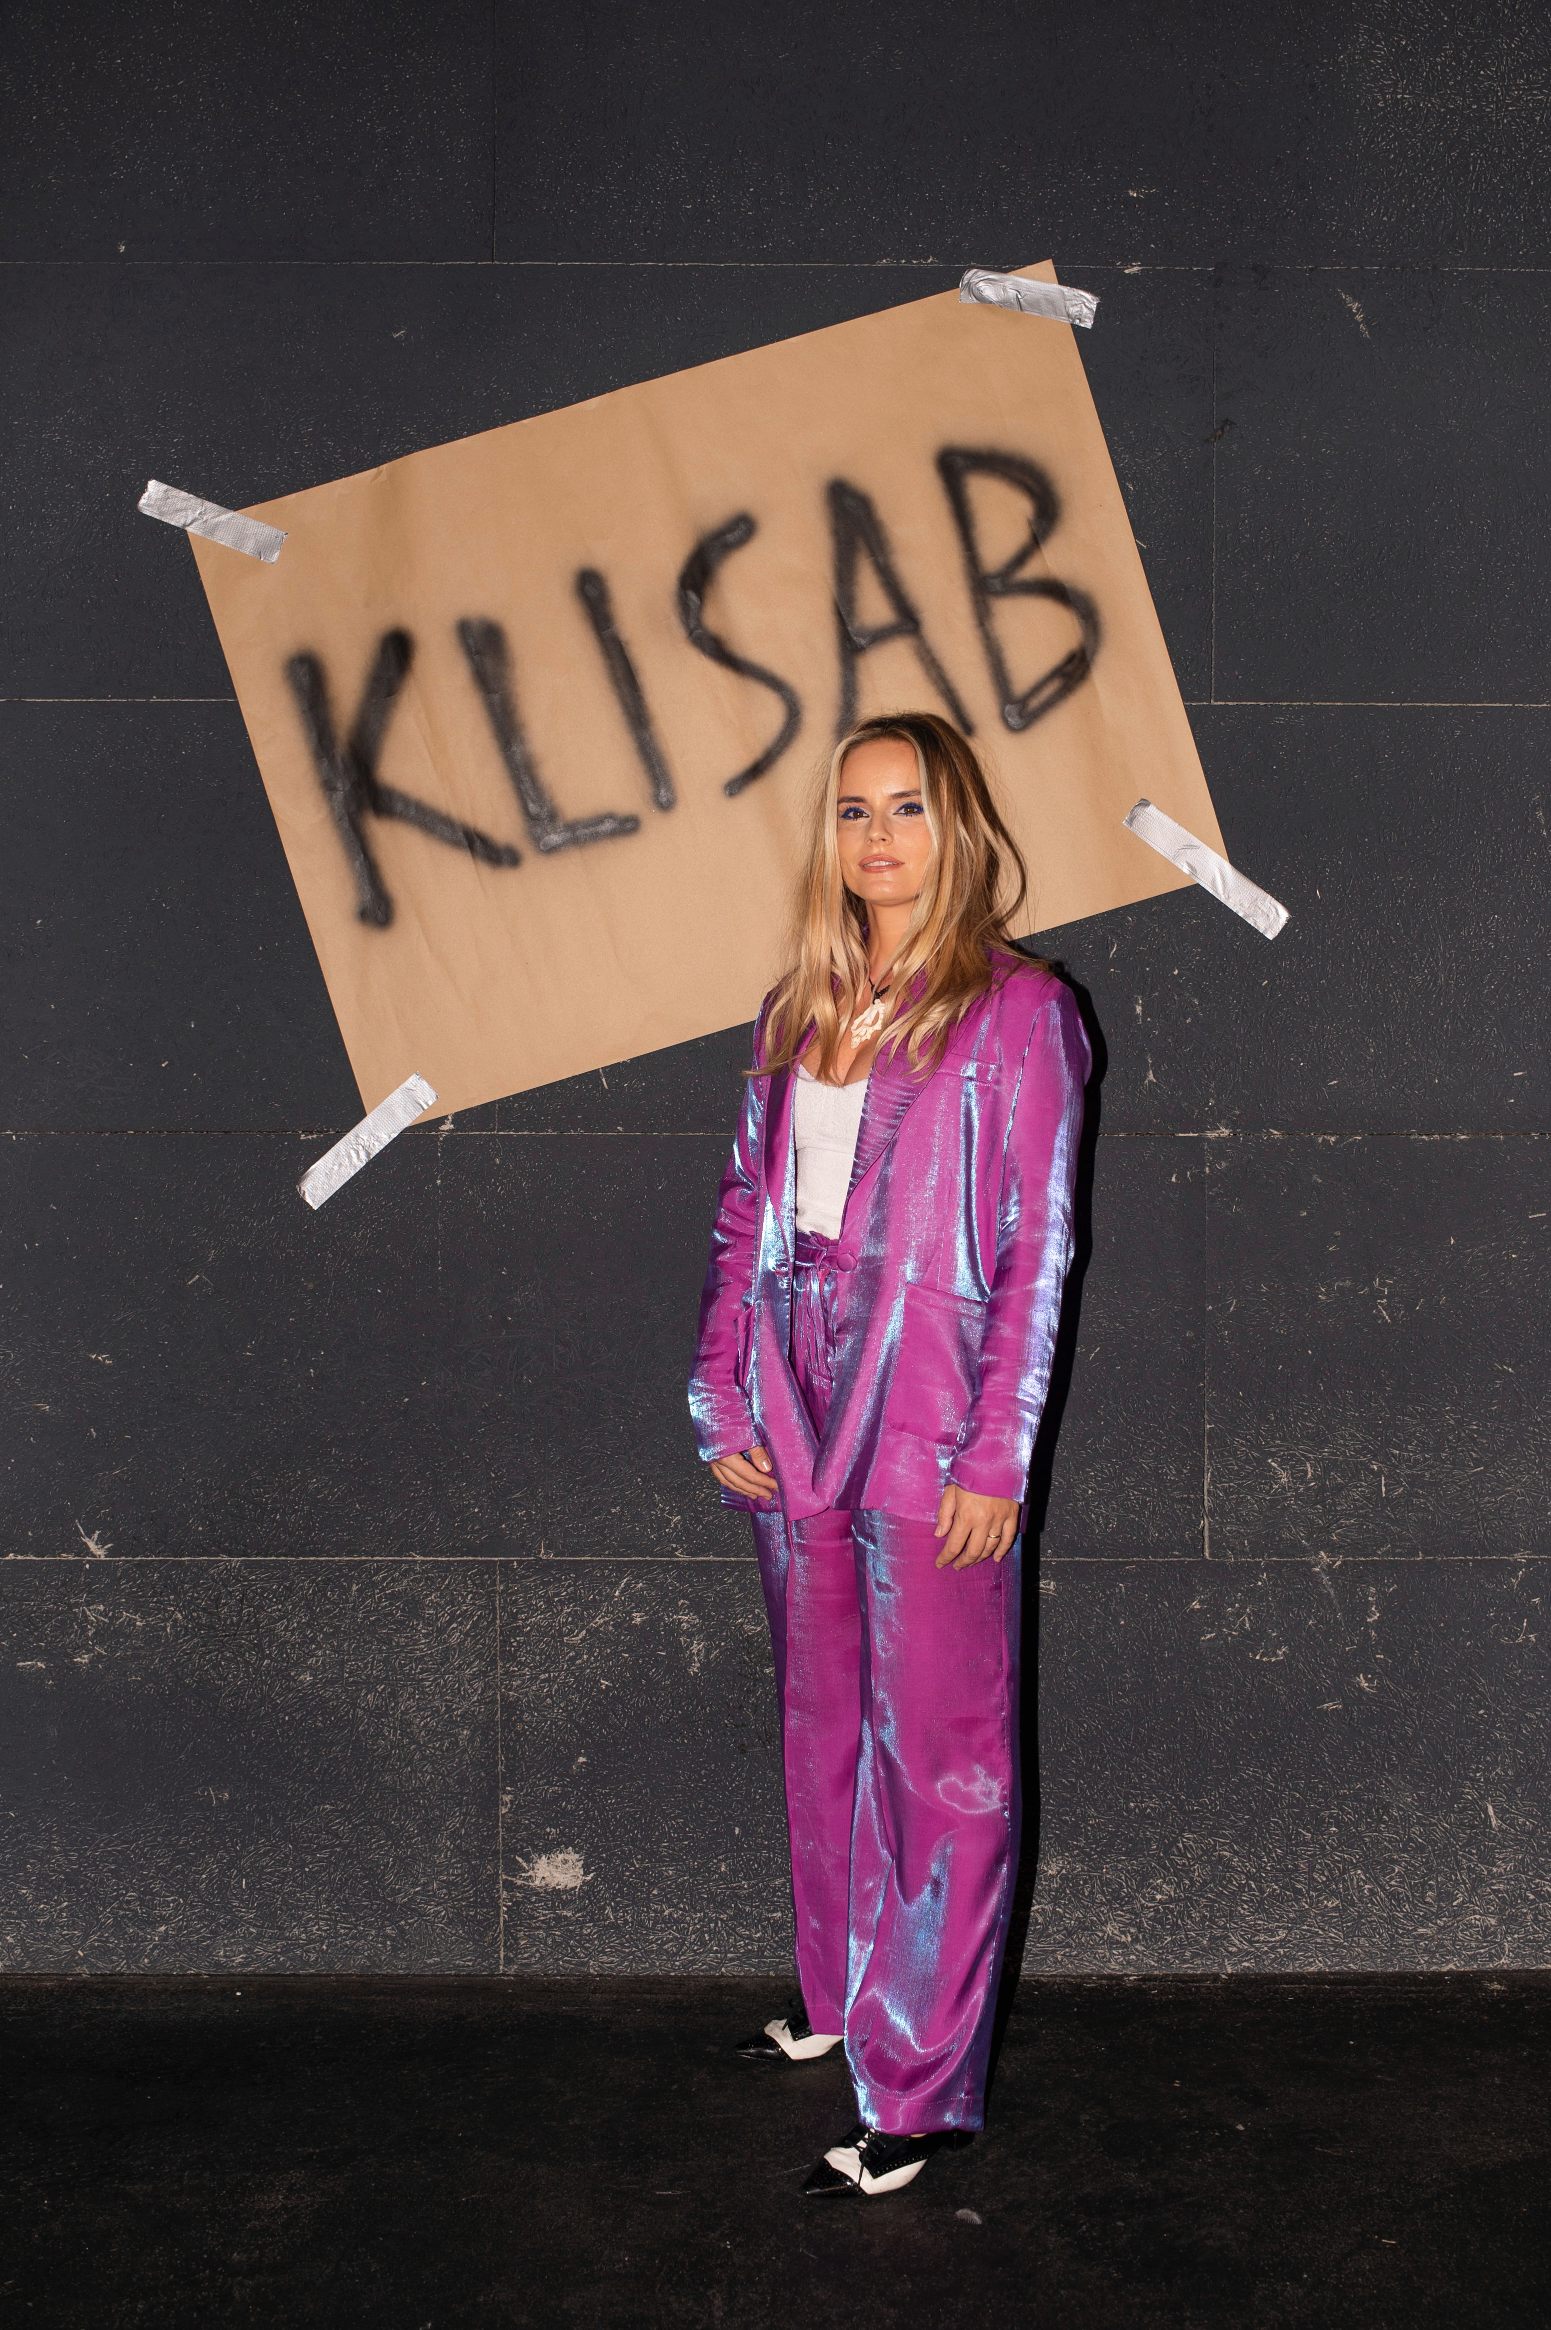 KLISAB održao svoju prvu samostalnu modnu reviju